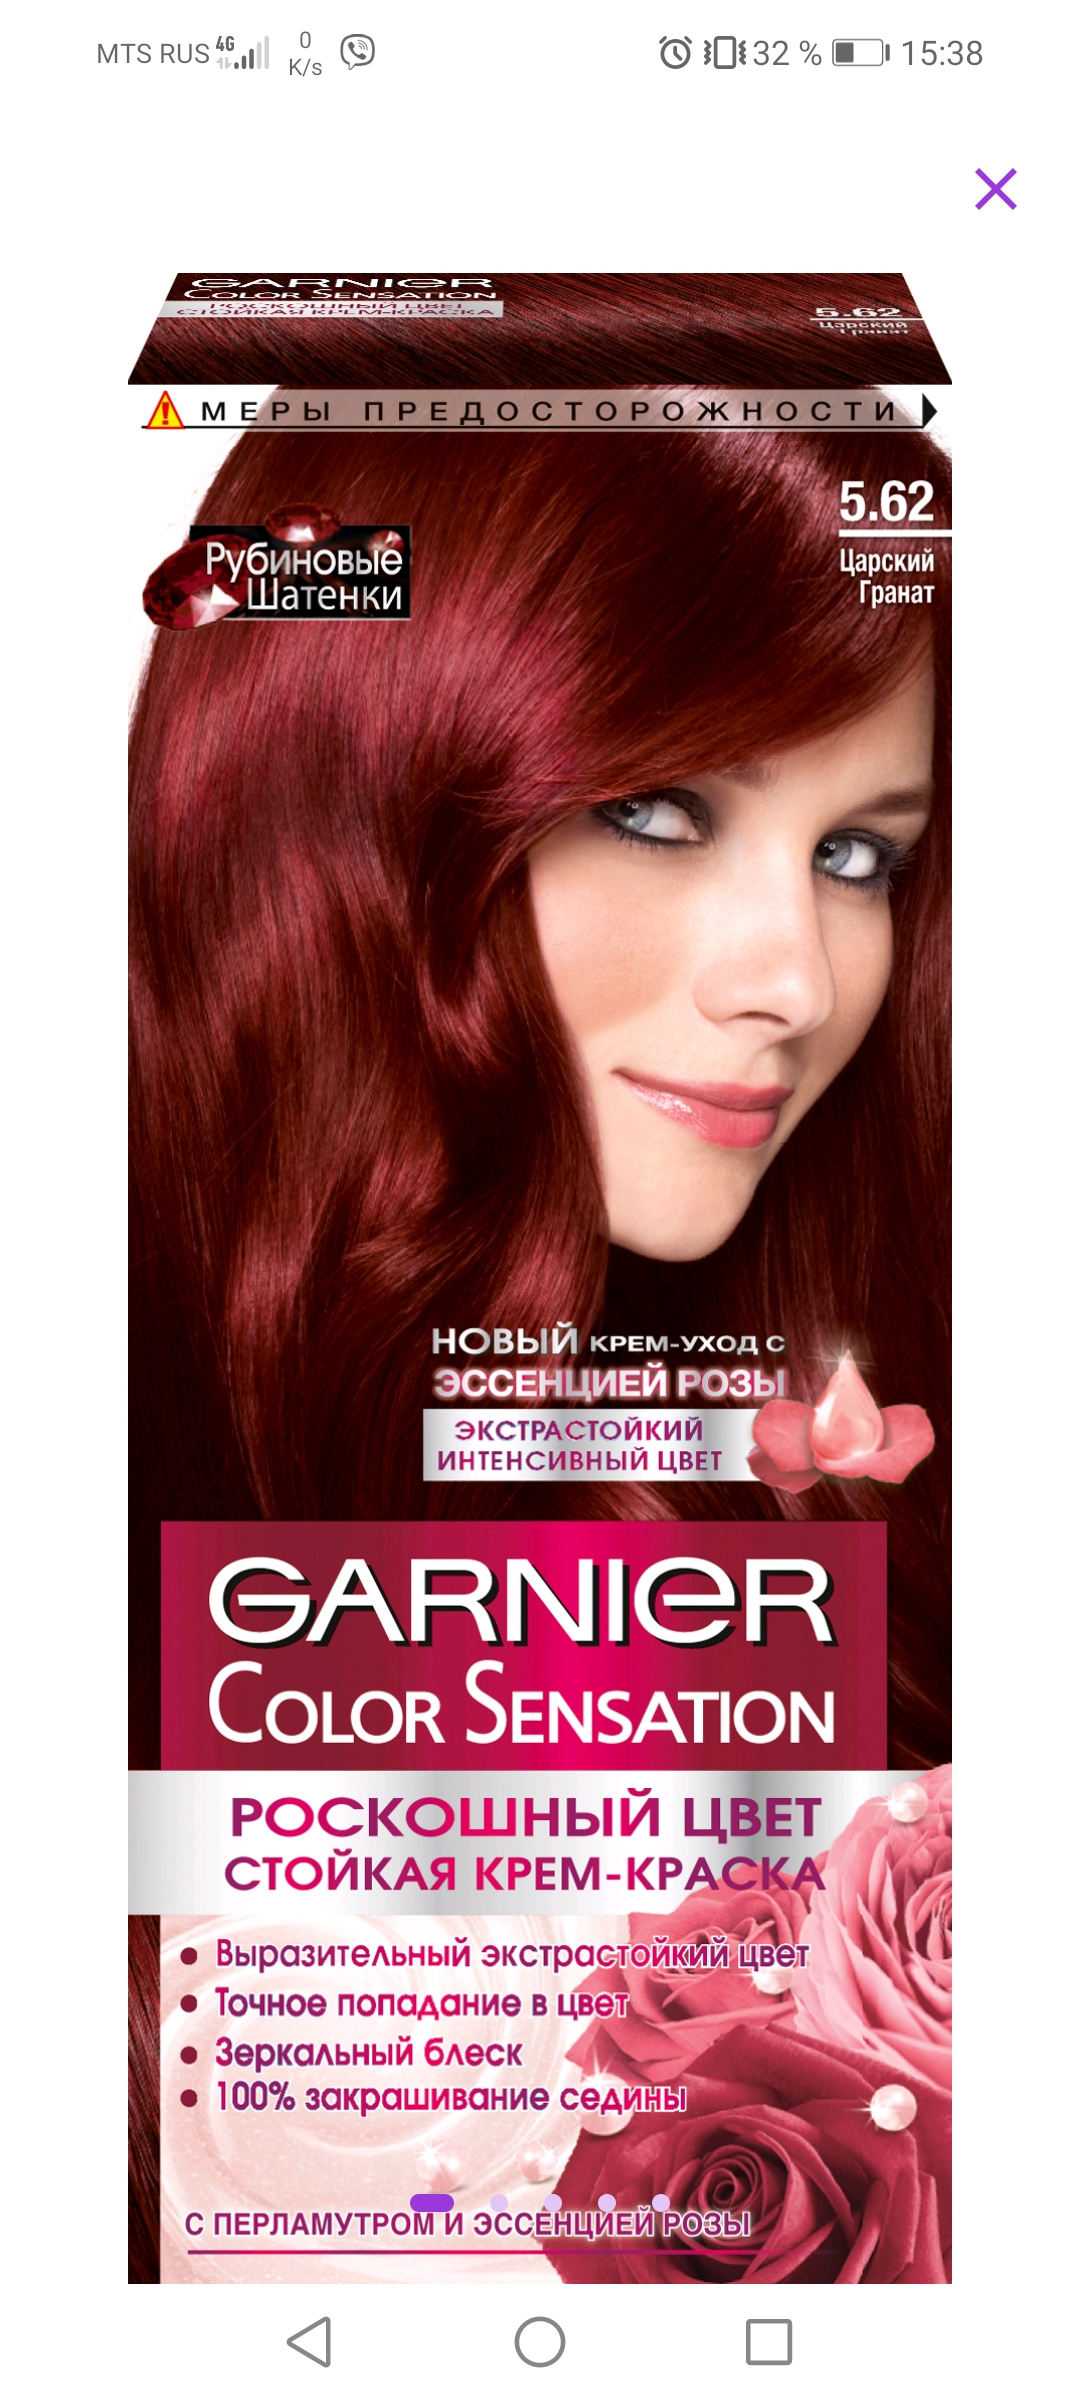 Garnier Color Sensation,оттенок 4.60